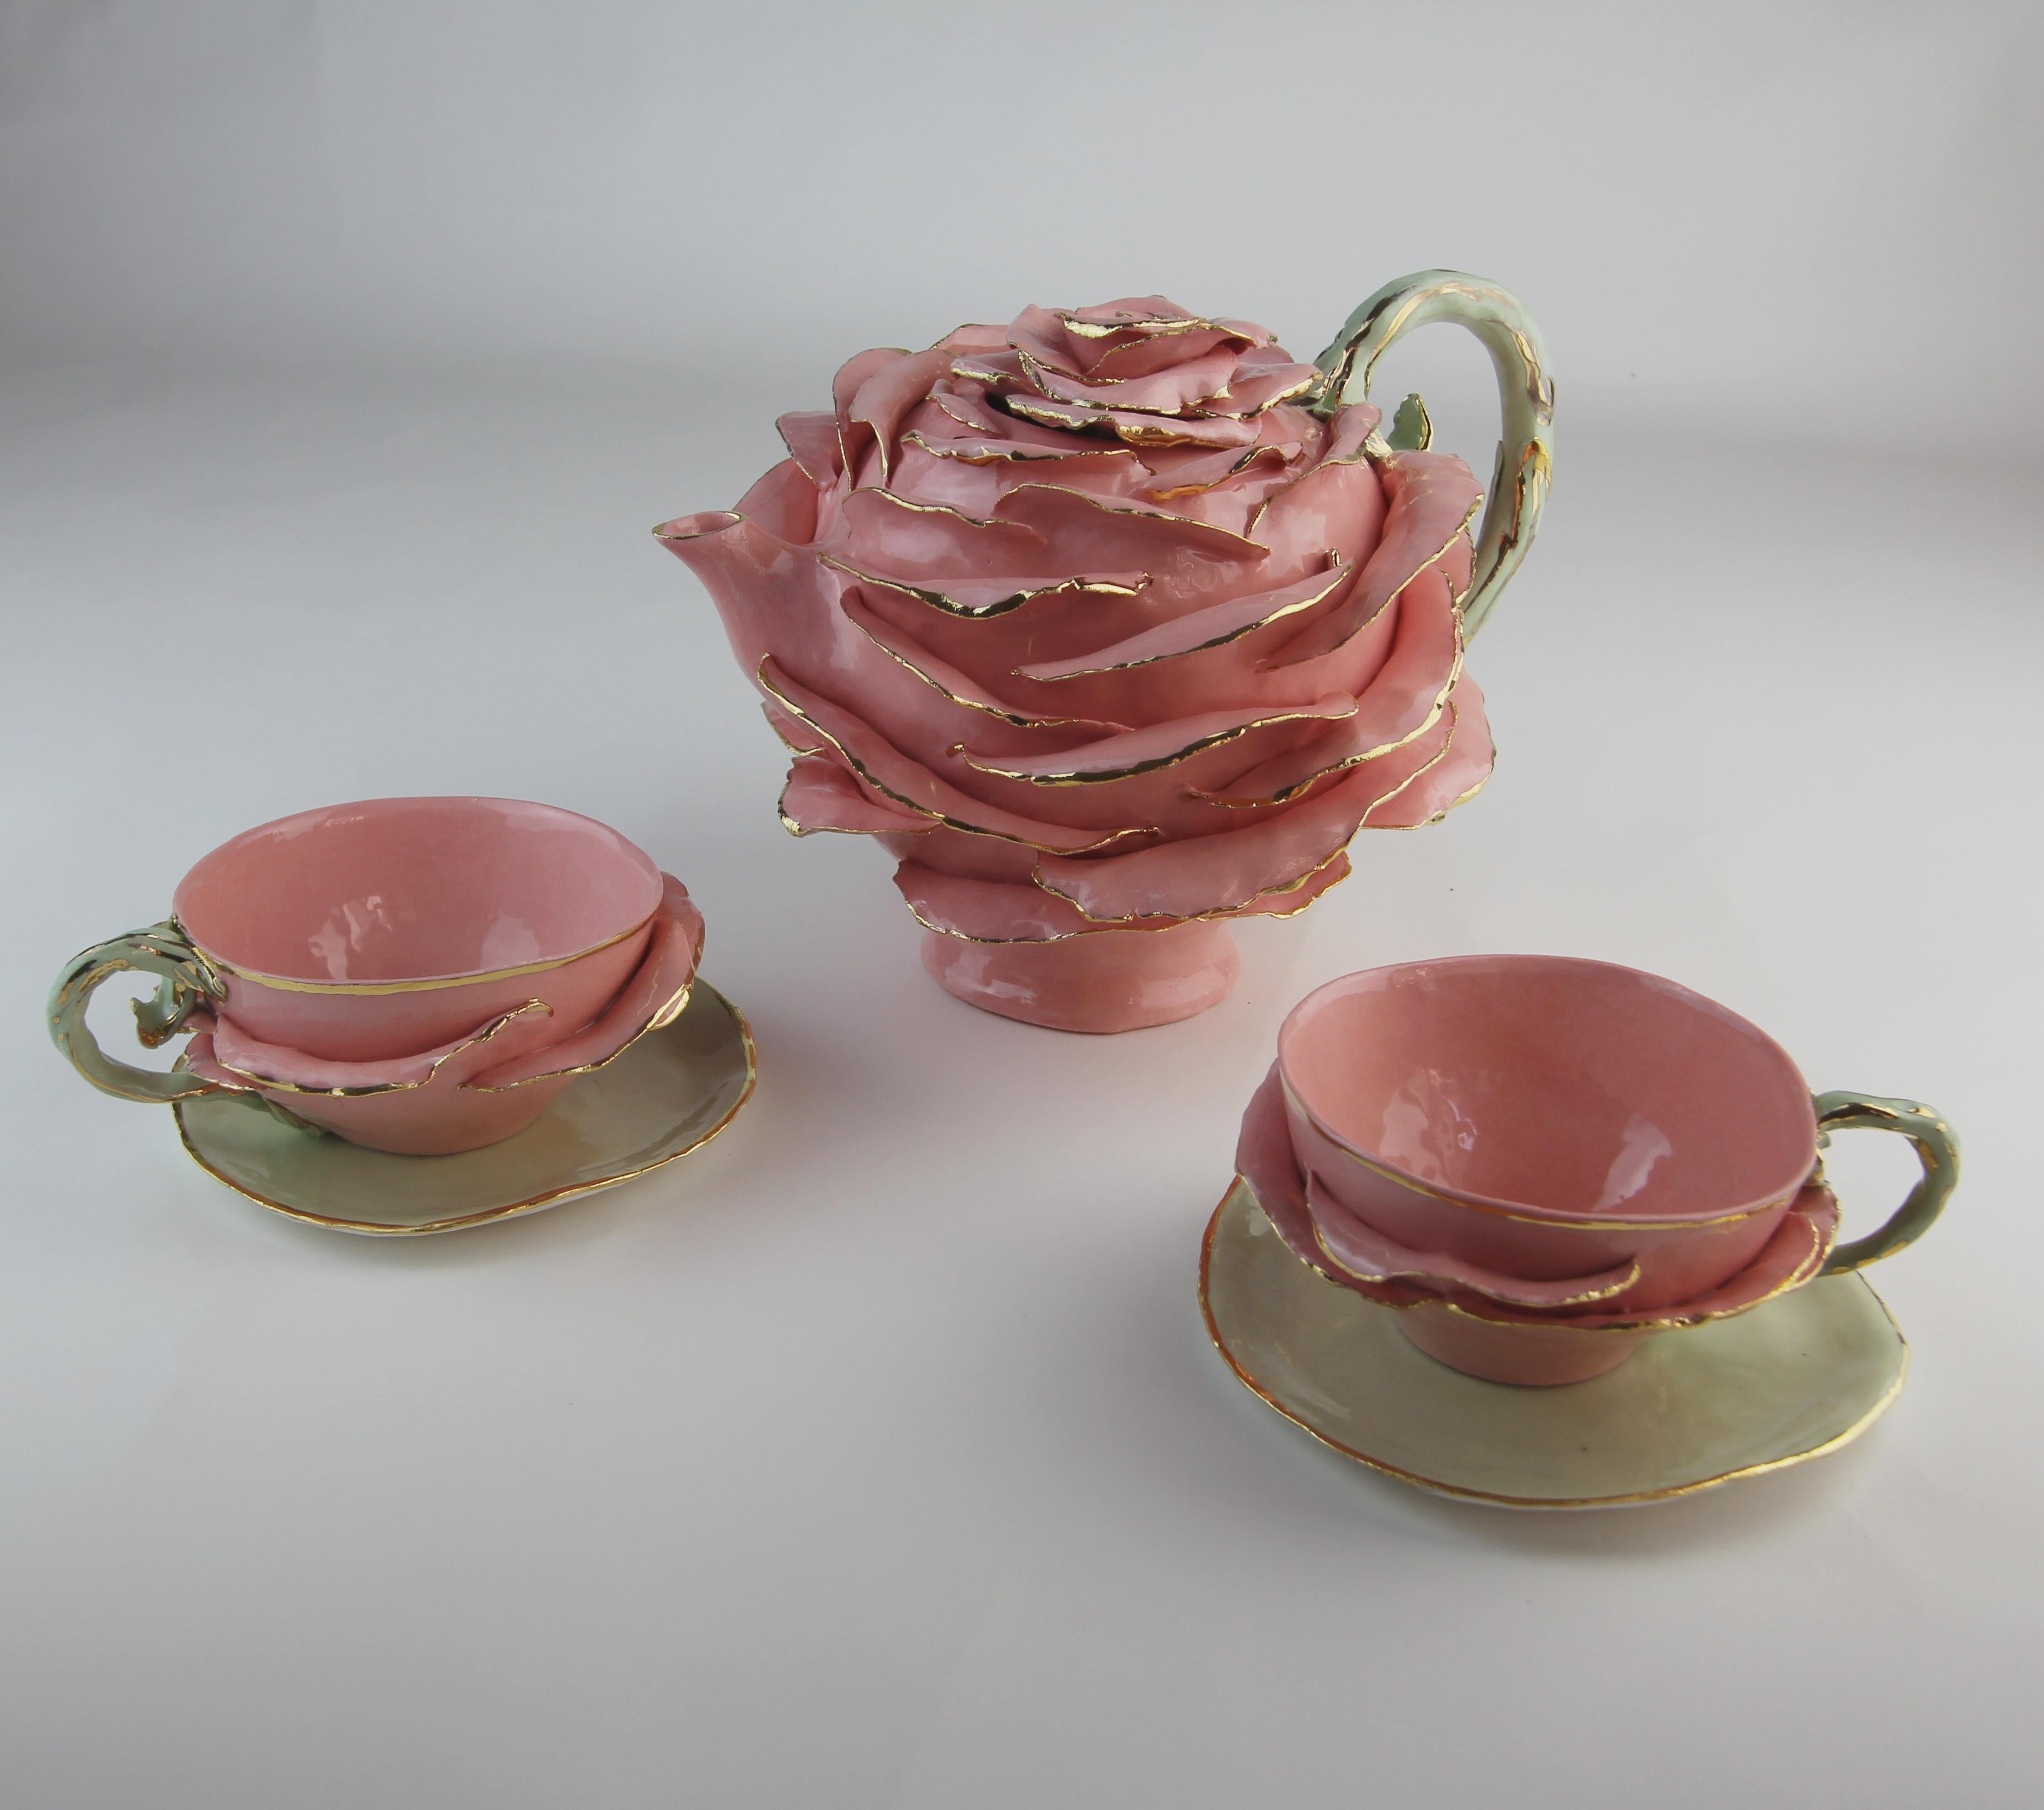 rose shaped teapot